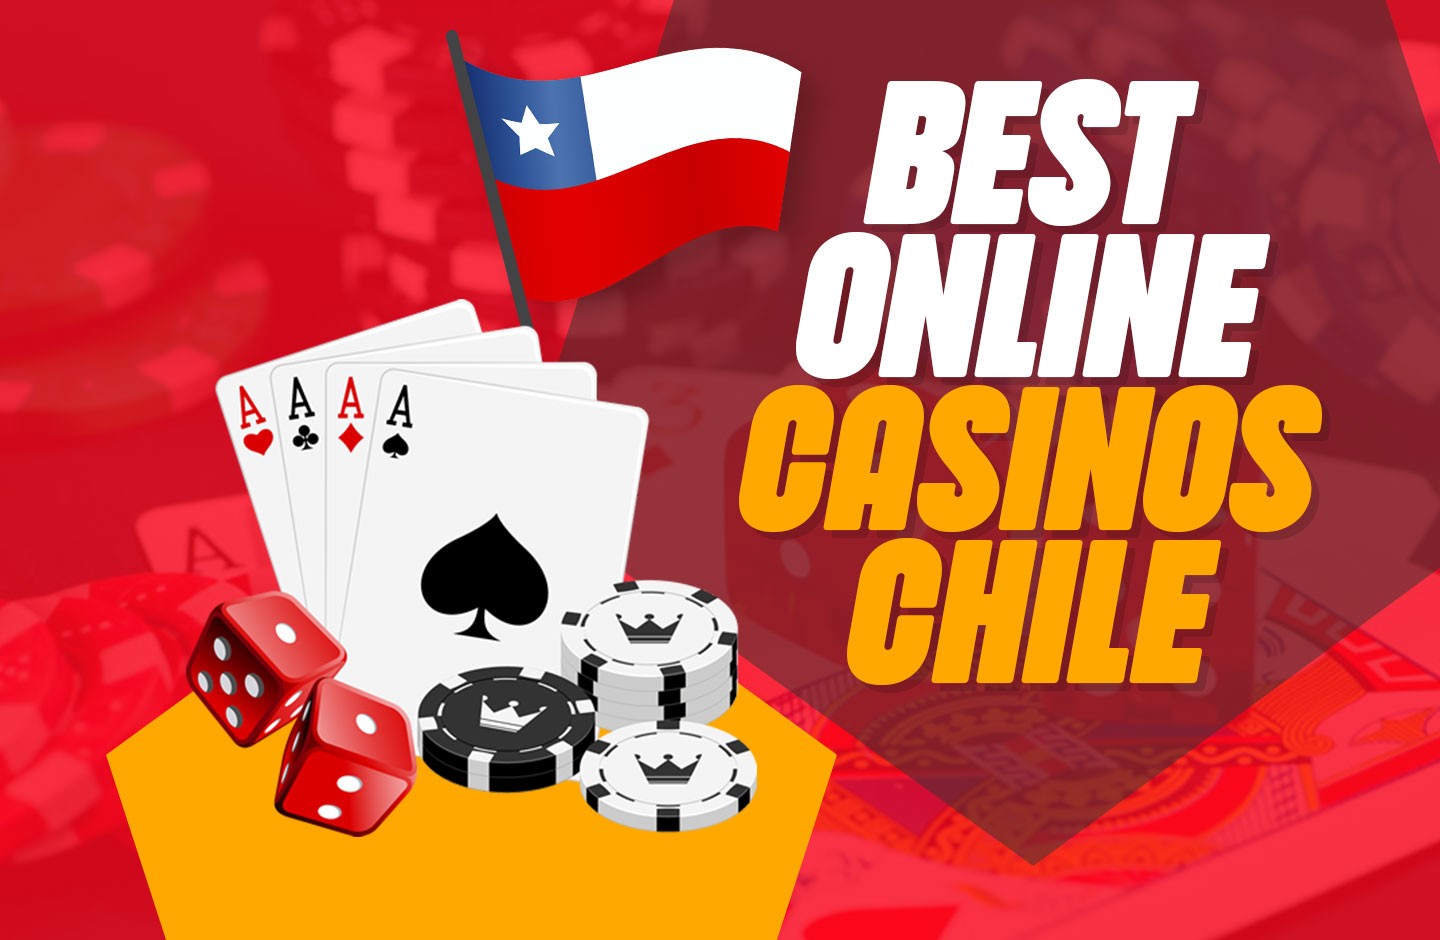 casinoco Chile